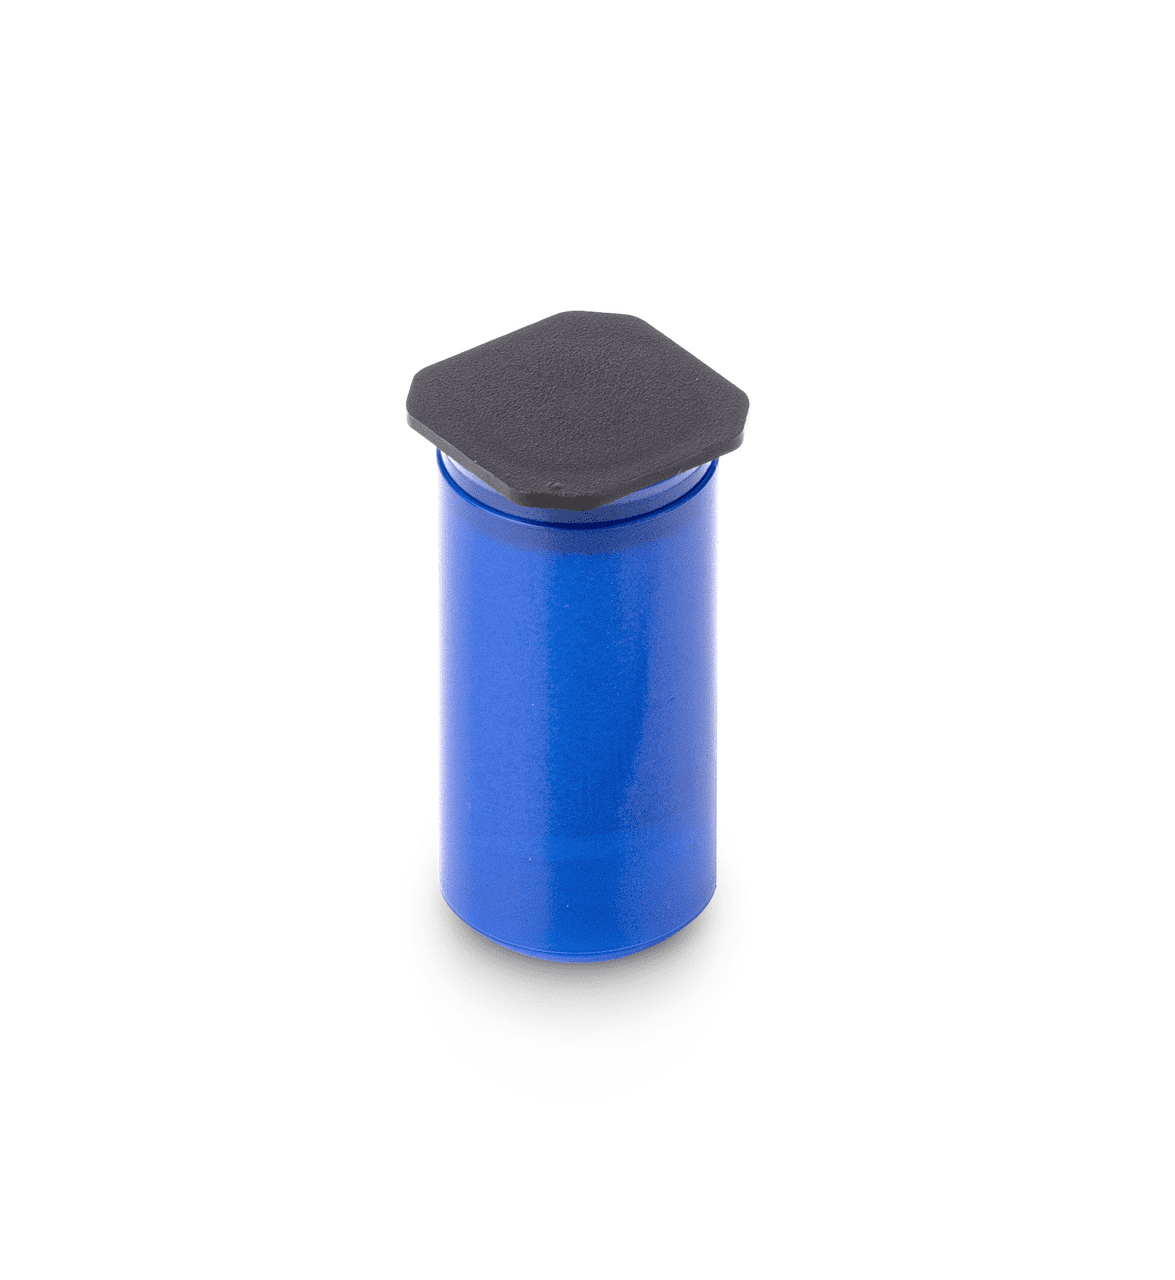 Etui aus blauem Kunststoff auf weißem Hintergrund. Das Etui hat eine Zylindrische Form und ist oben von einem schwarzen Deckel abgedeckt.